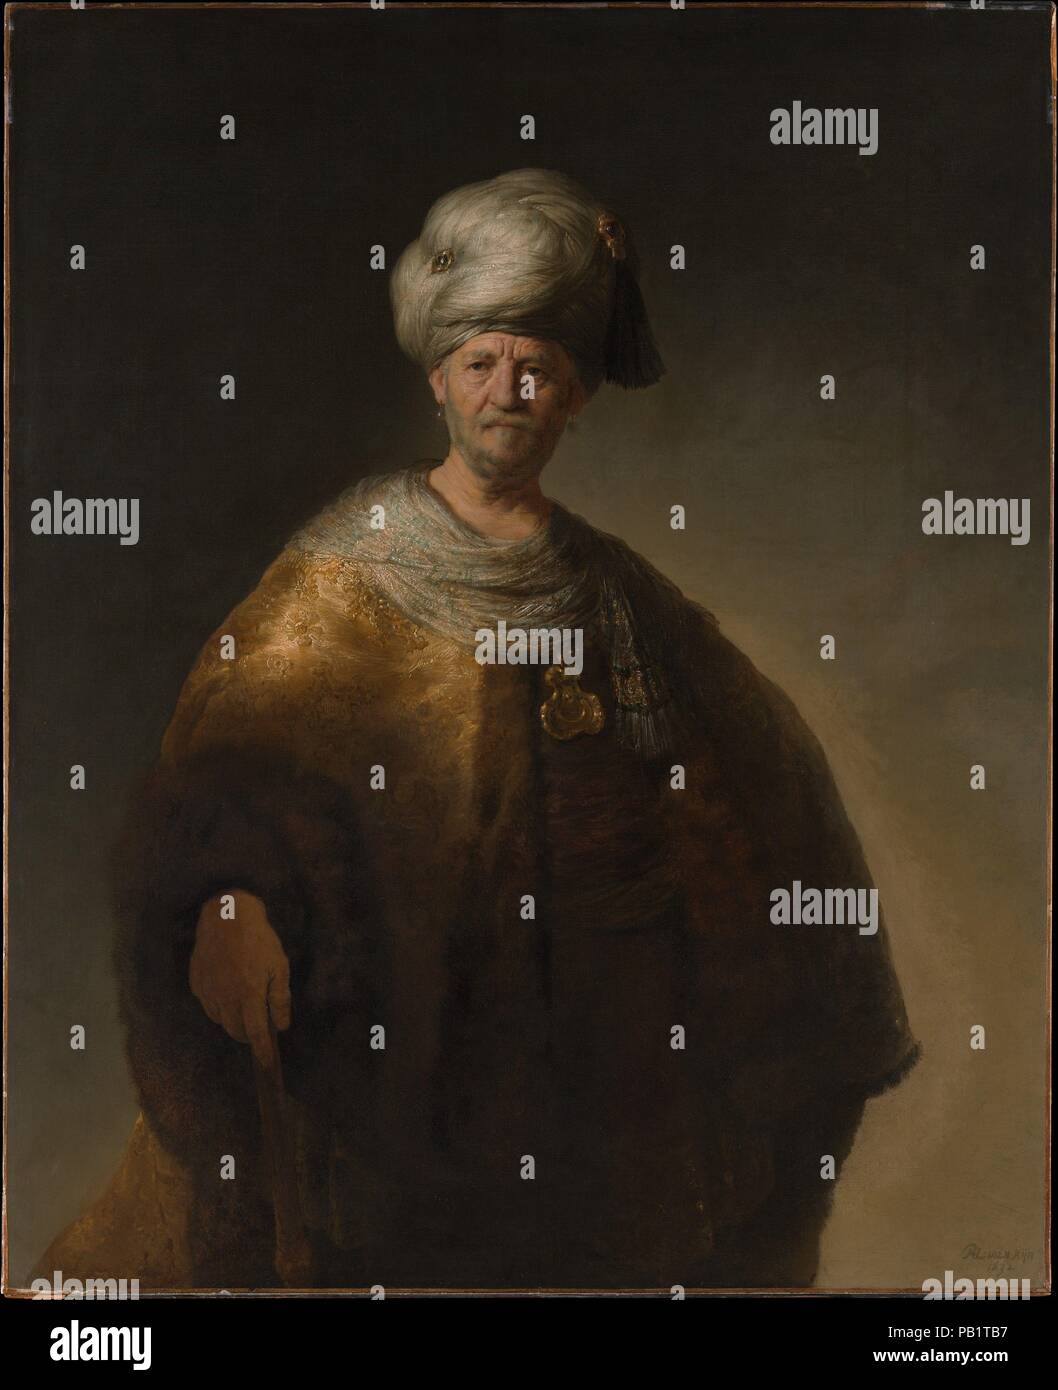 L'homme en costume oriental ('Les Slaves Noble'). Artiste : Rembrandt Rembrandt (van Rijn) (Néerlandais, Leyde 1606-1669 Amsterdam). Dimensions : 60 1/8 x 43 3/4''. (152,7 x 111,1 cm). Date : 1632. Par rapport aux portraits officiels de Rembrandt De la même année, cette photo est remarquable pour son brillant au pinceau et dramatique de l'éclairage. Il a été probablement peint peu après avoir quitté sa ville natale de Leiden et Amsterdam, et dans son sujet et le style exotique était certainement destiné à un collectionneur averti. Photos de Persan imaginaire, pouf, ou sinon "orientale" princes étaient populaires à l'époque raison Banque D'Images